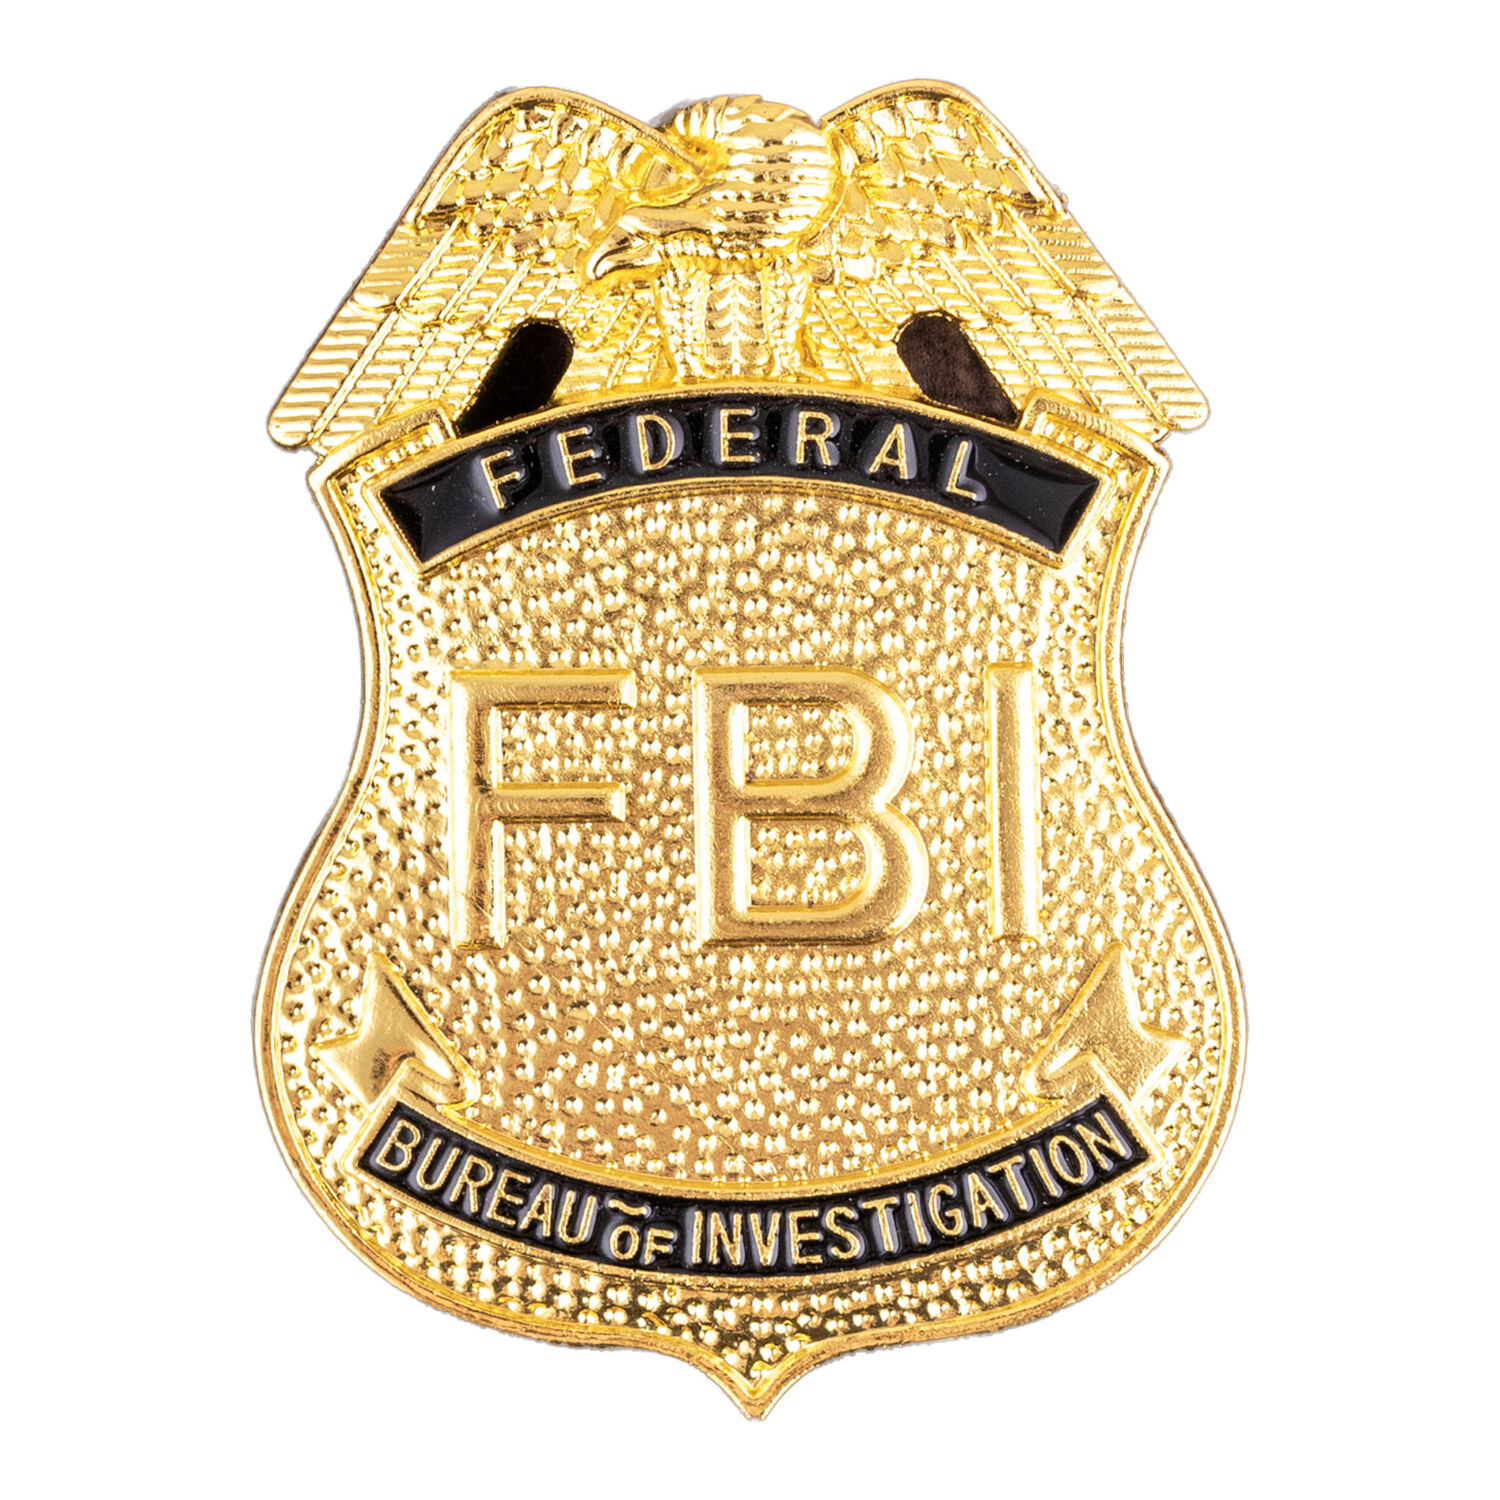 NEU FBI-Abzeichen aus Metall zum Anstecken, Gold-Optik